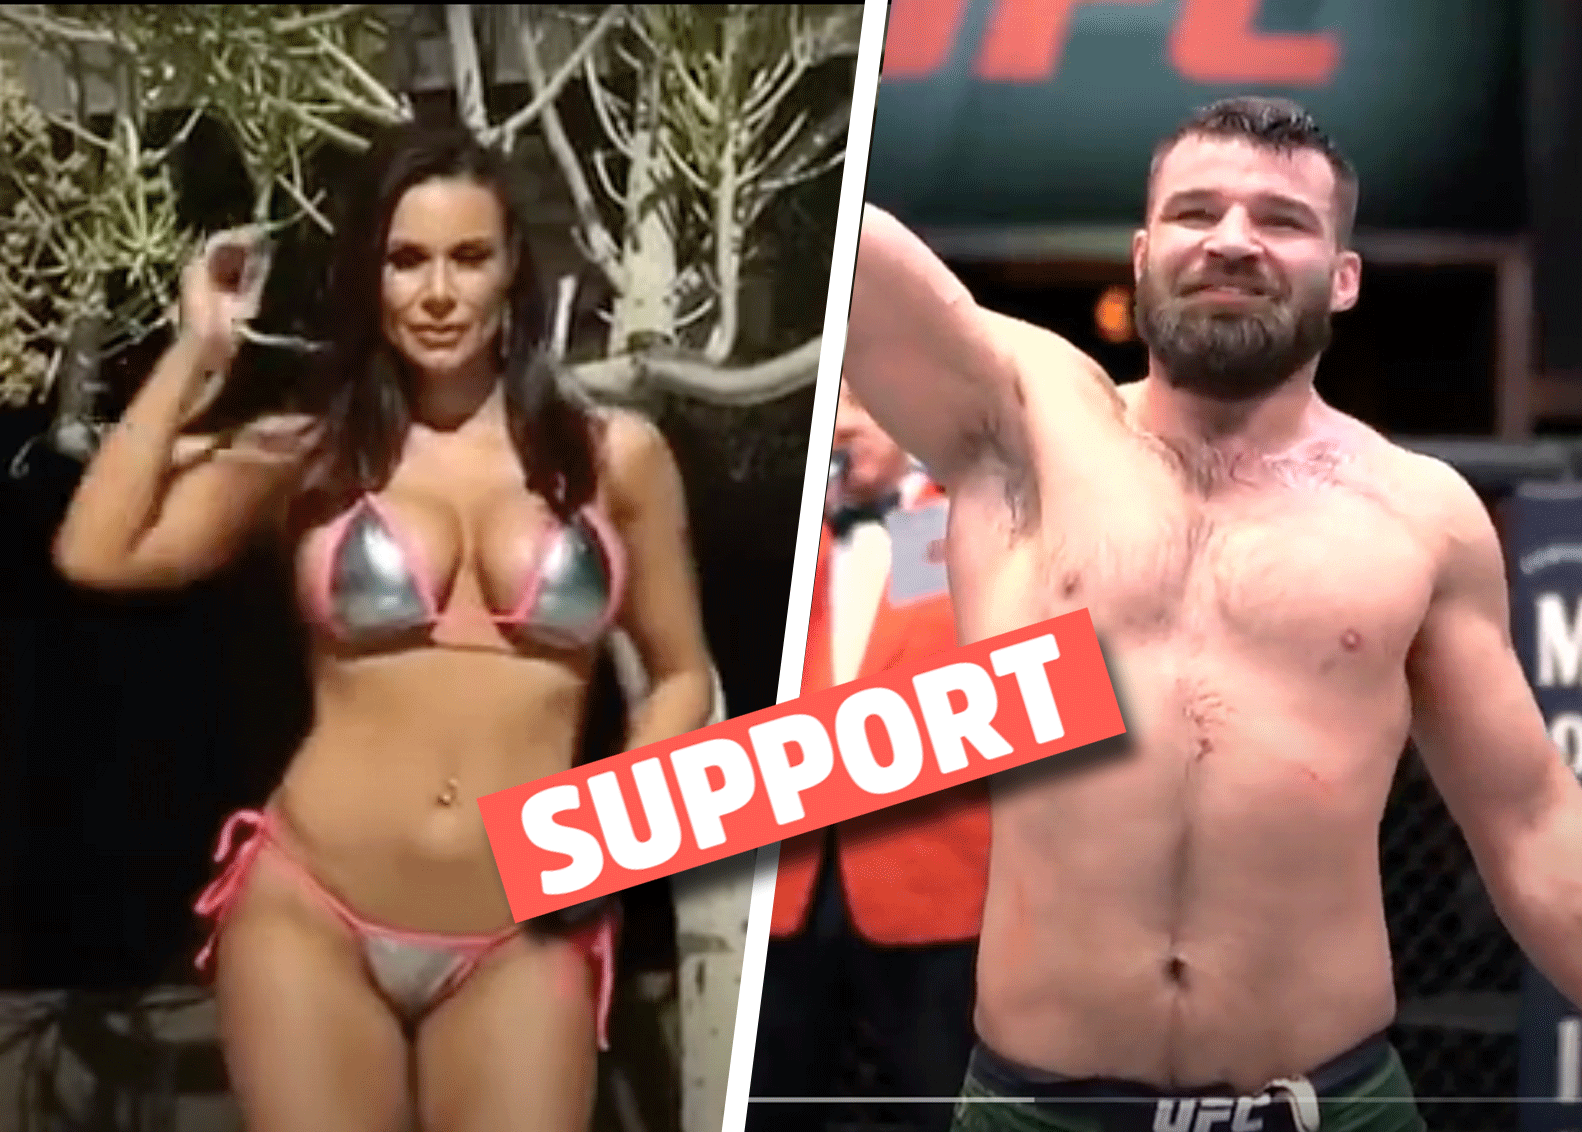 'Hij heeft niks verpest': Pornoster steunt afgewezen MMA-vechter